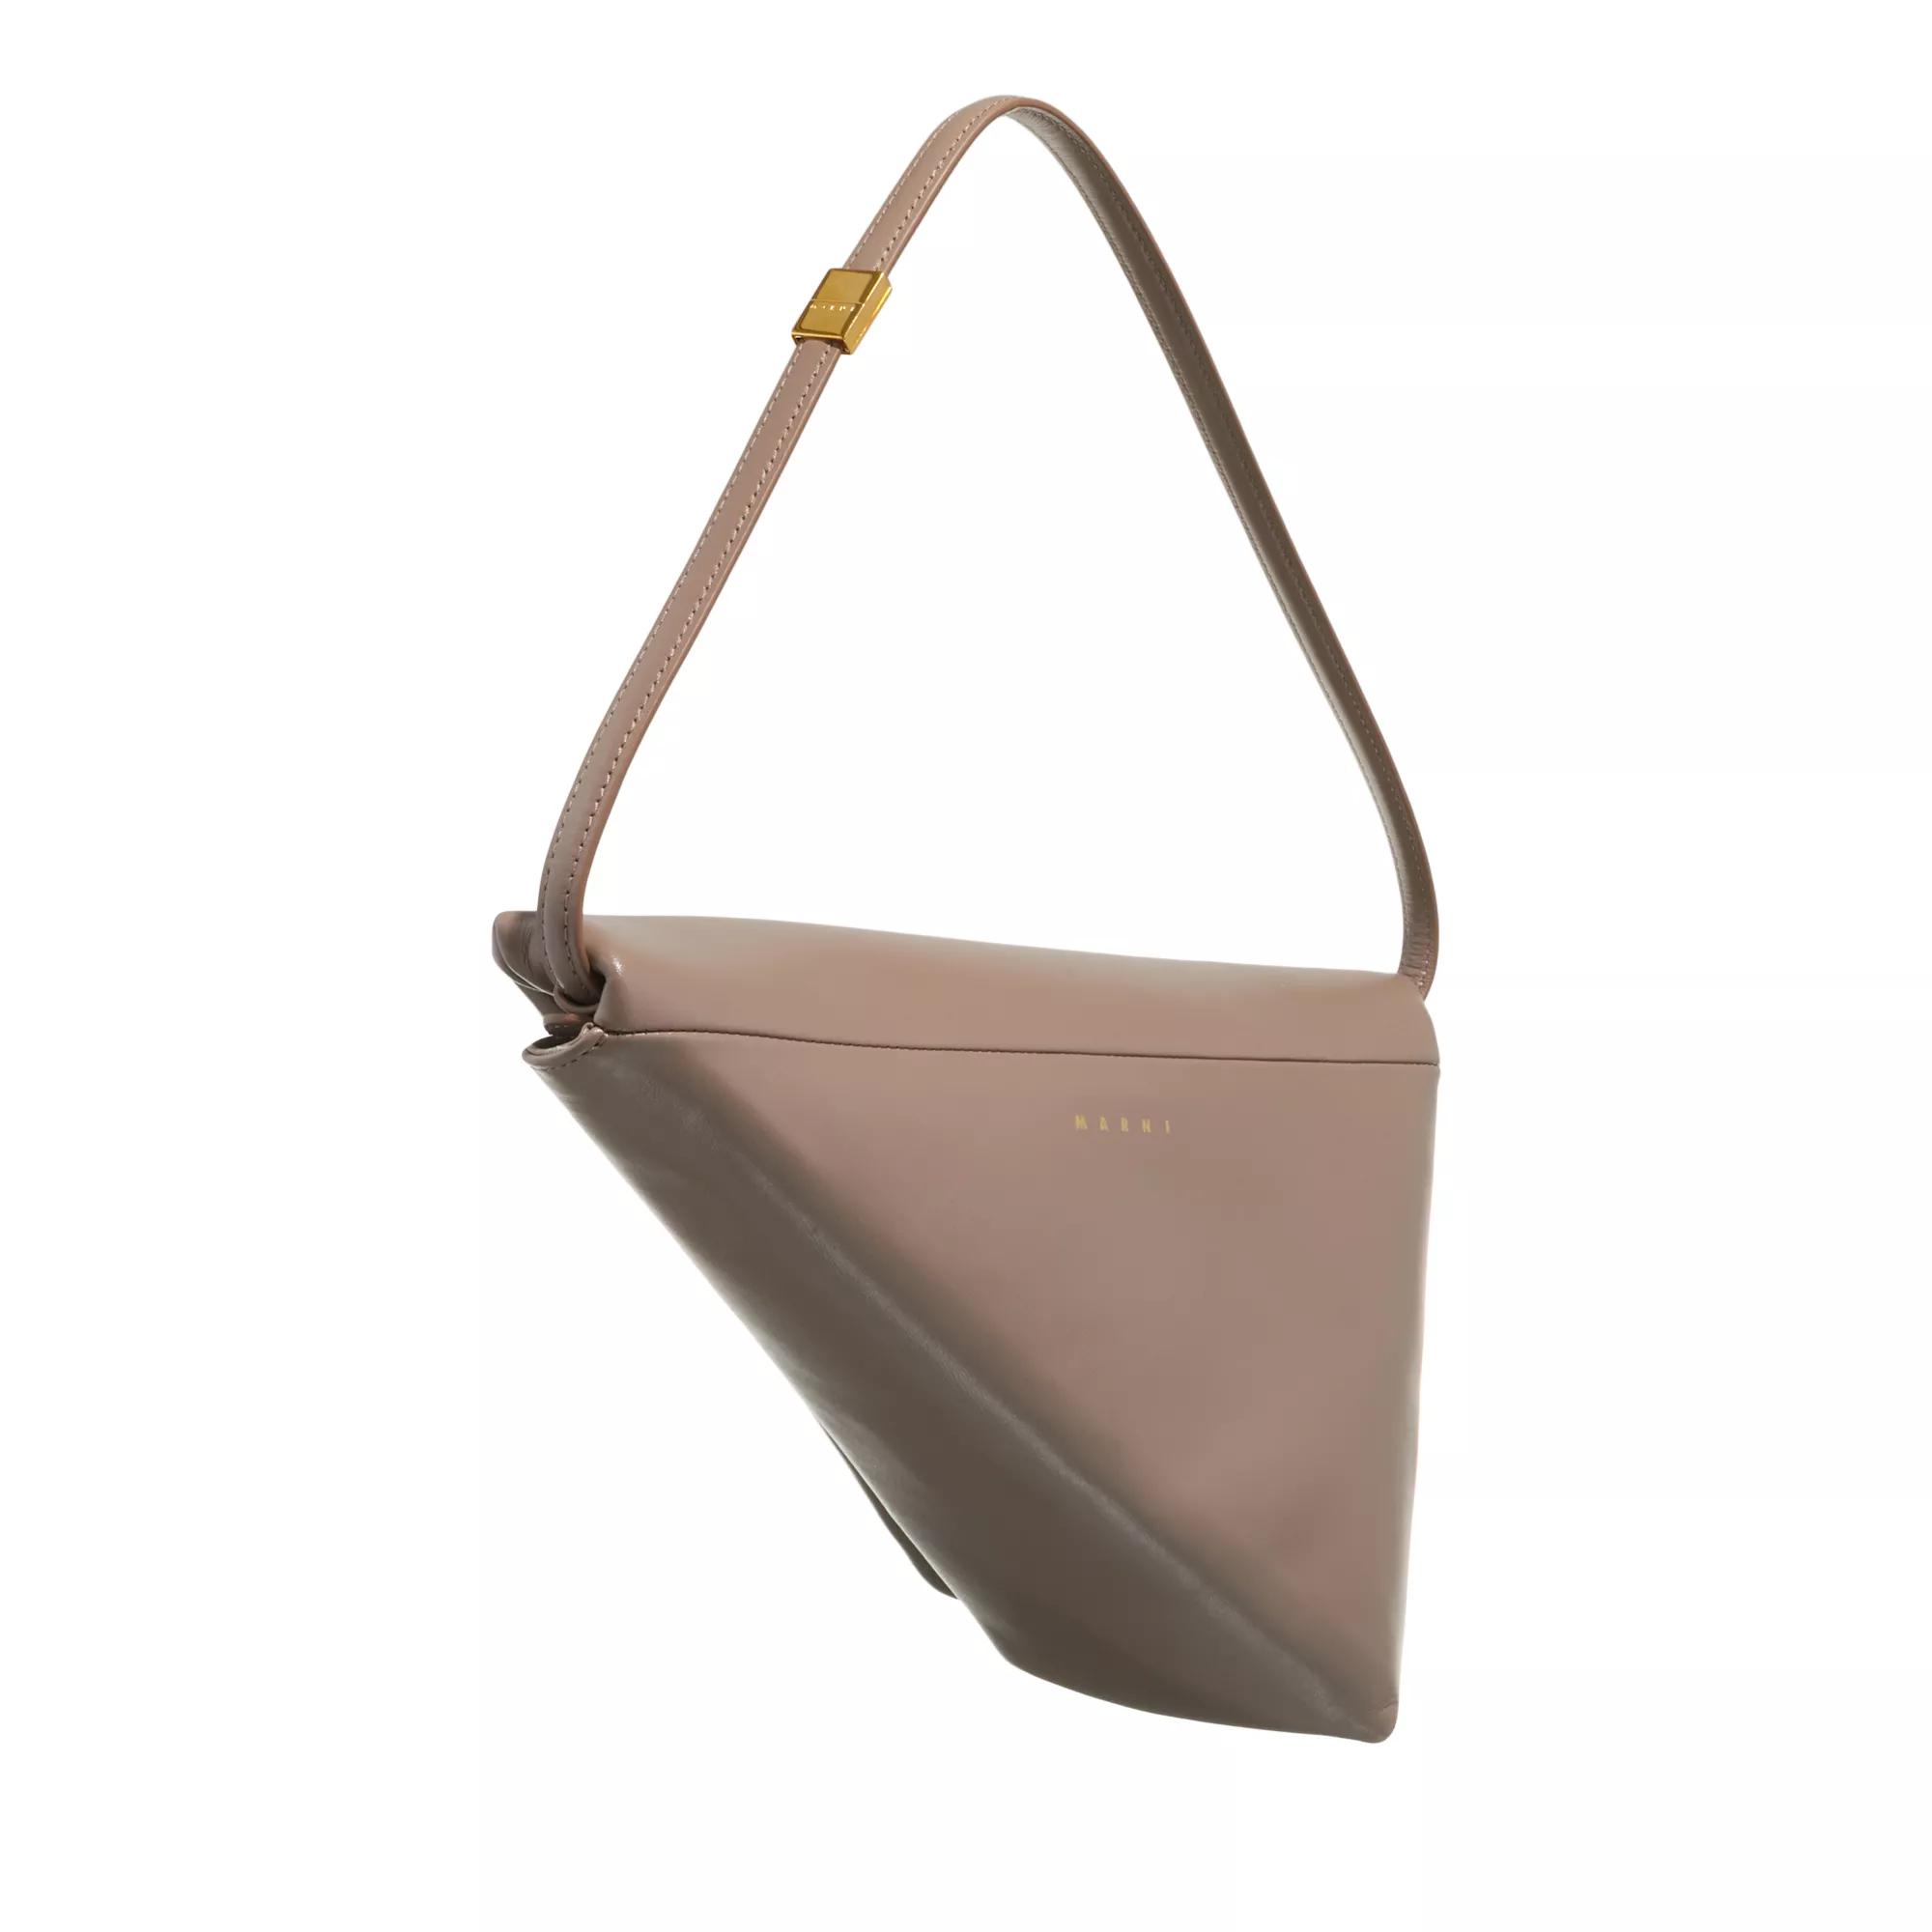 Marni Pochettes Prisma Triangle Bag in taupe